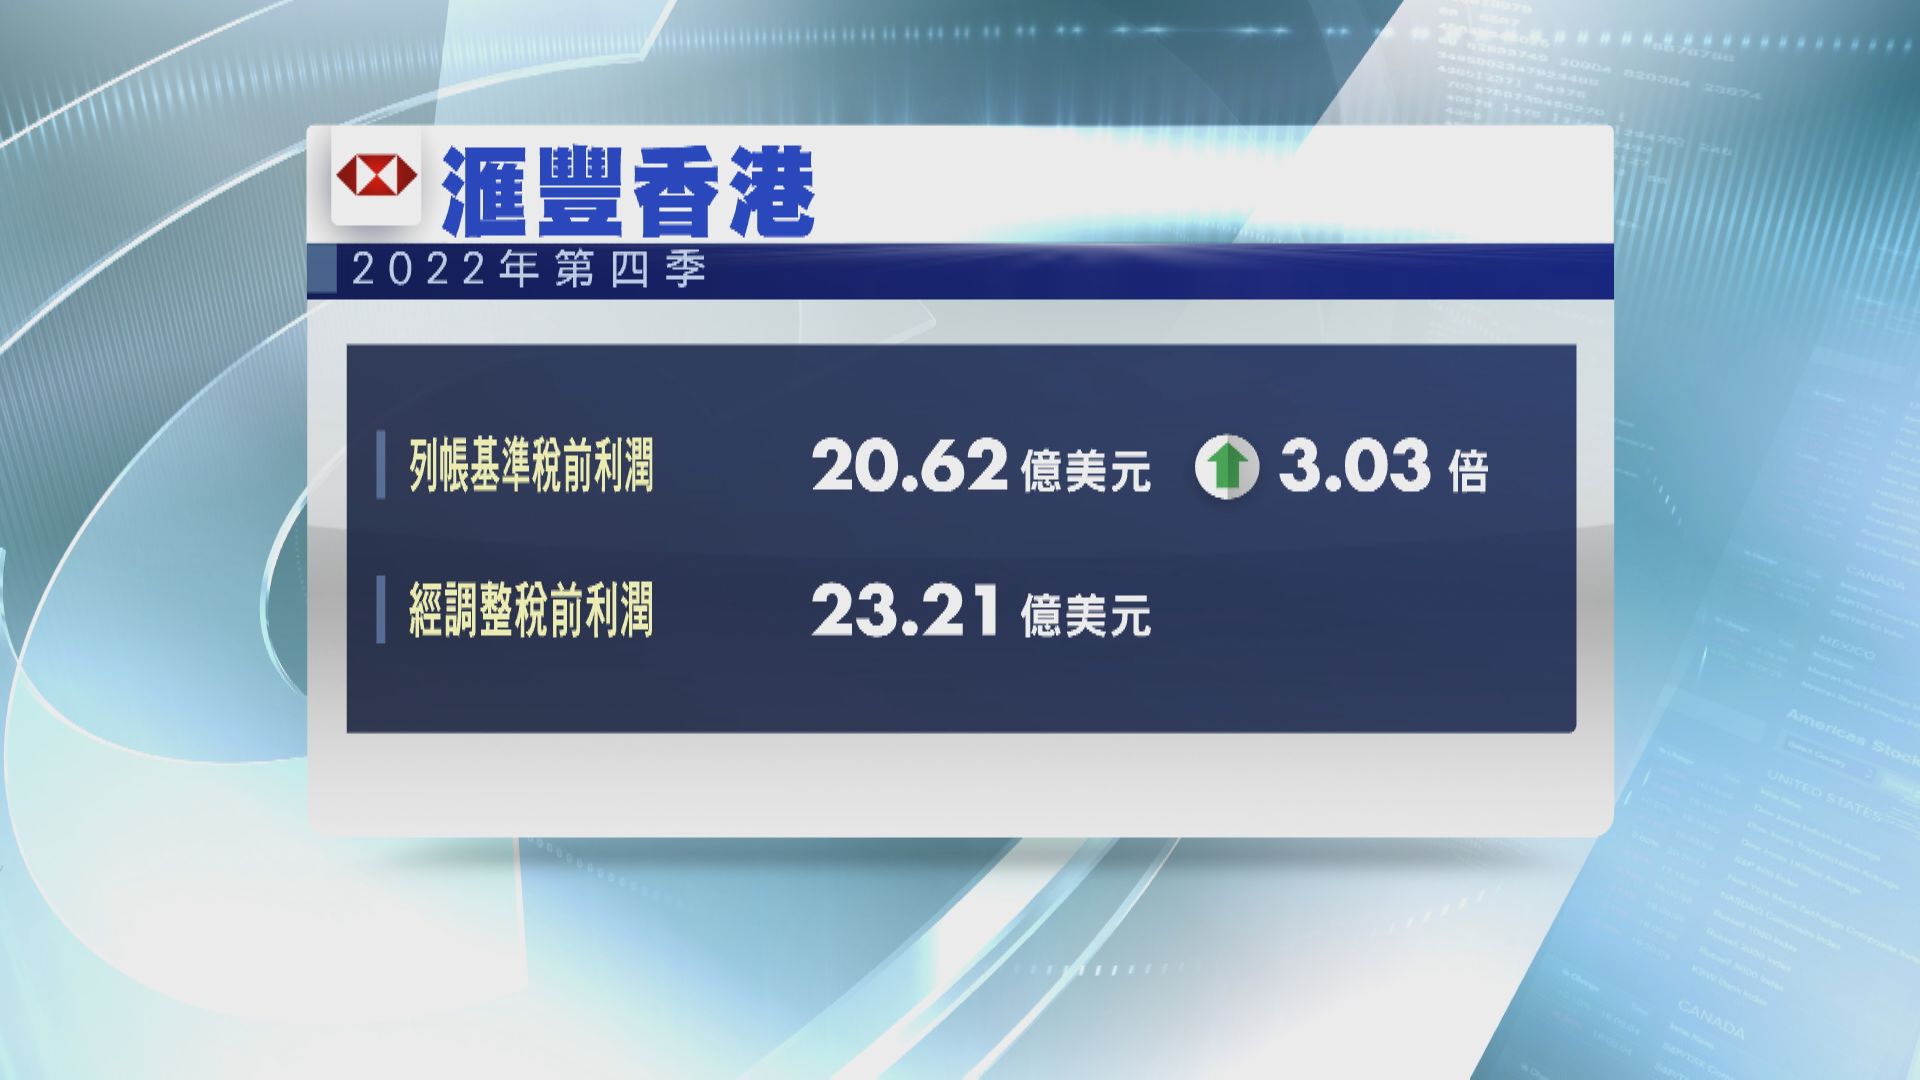 【獅王業績】滙豐香港上季稅前利潤大升3倍